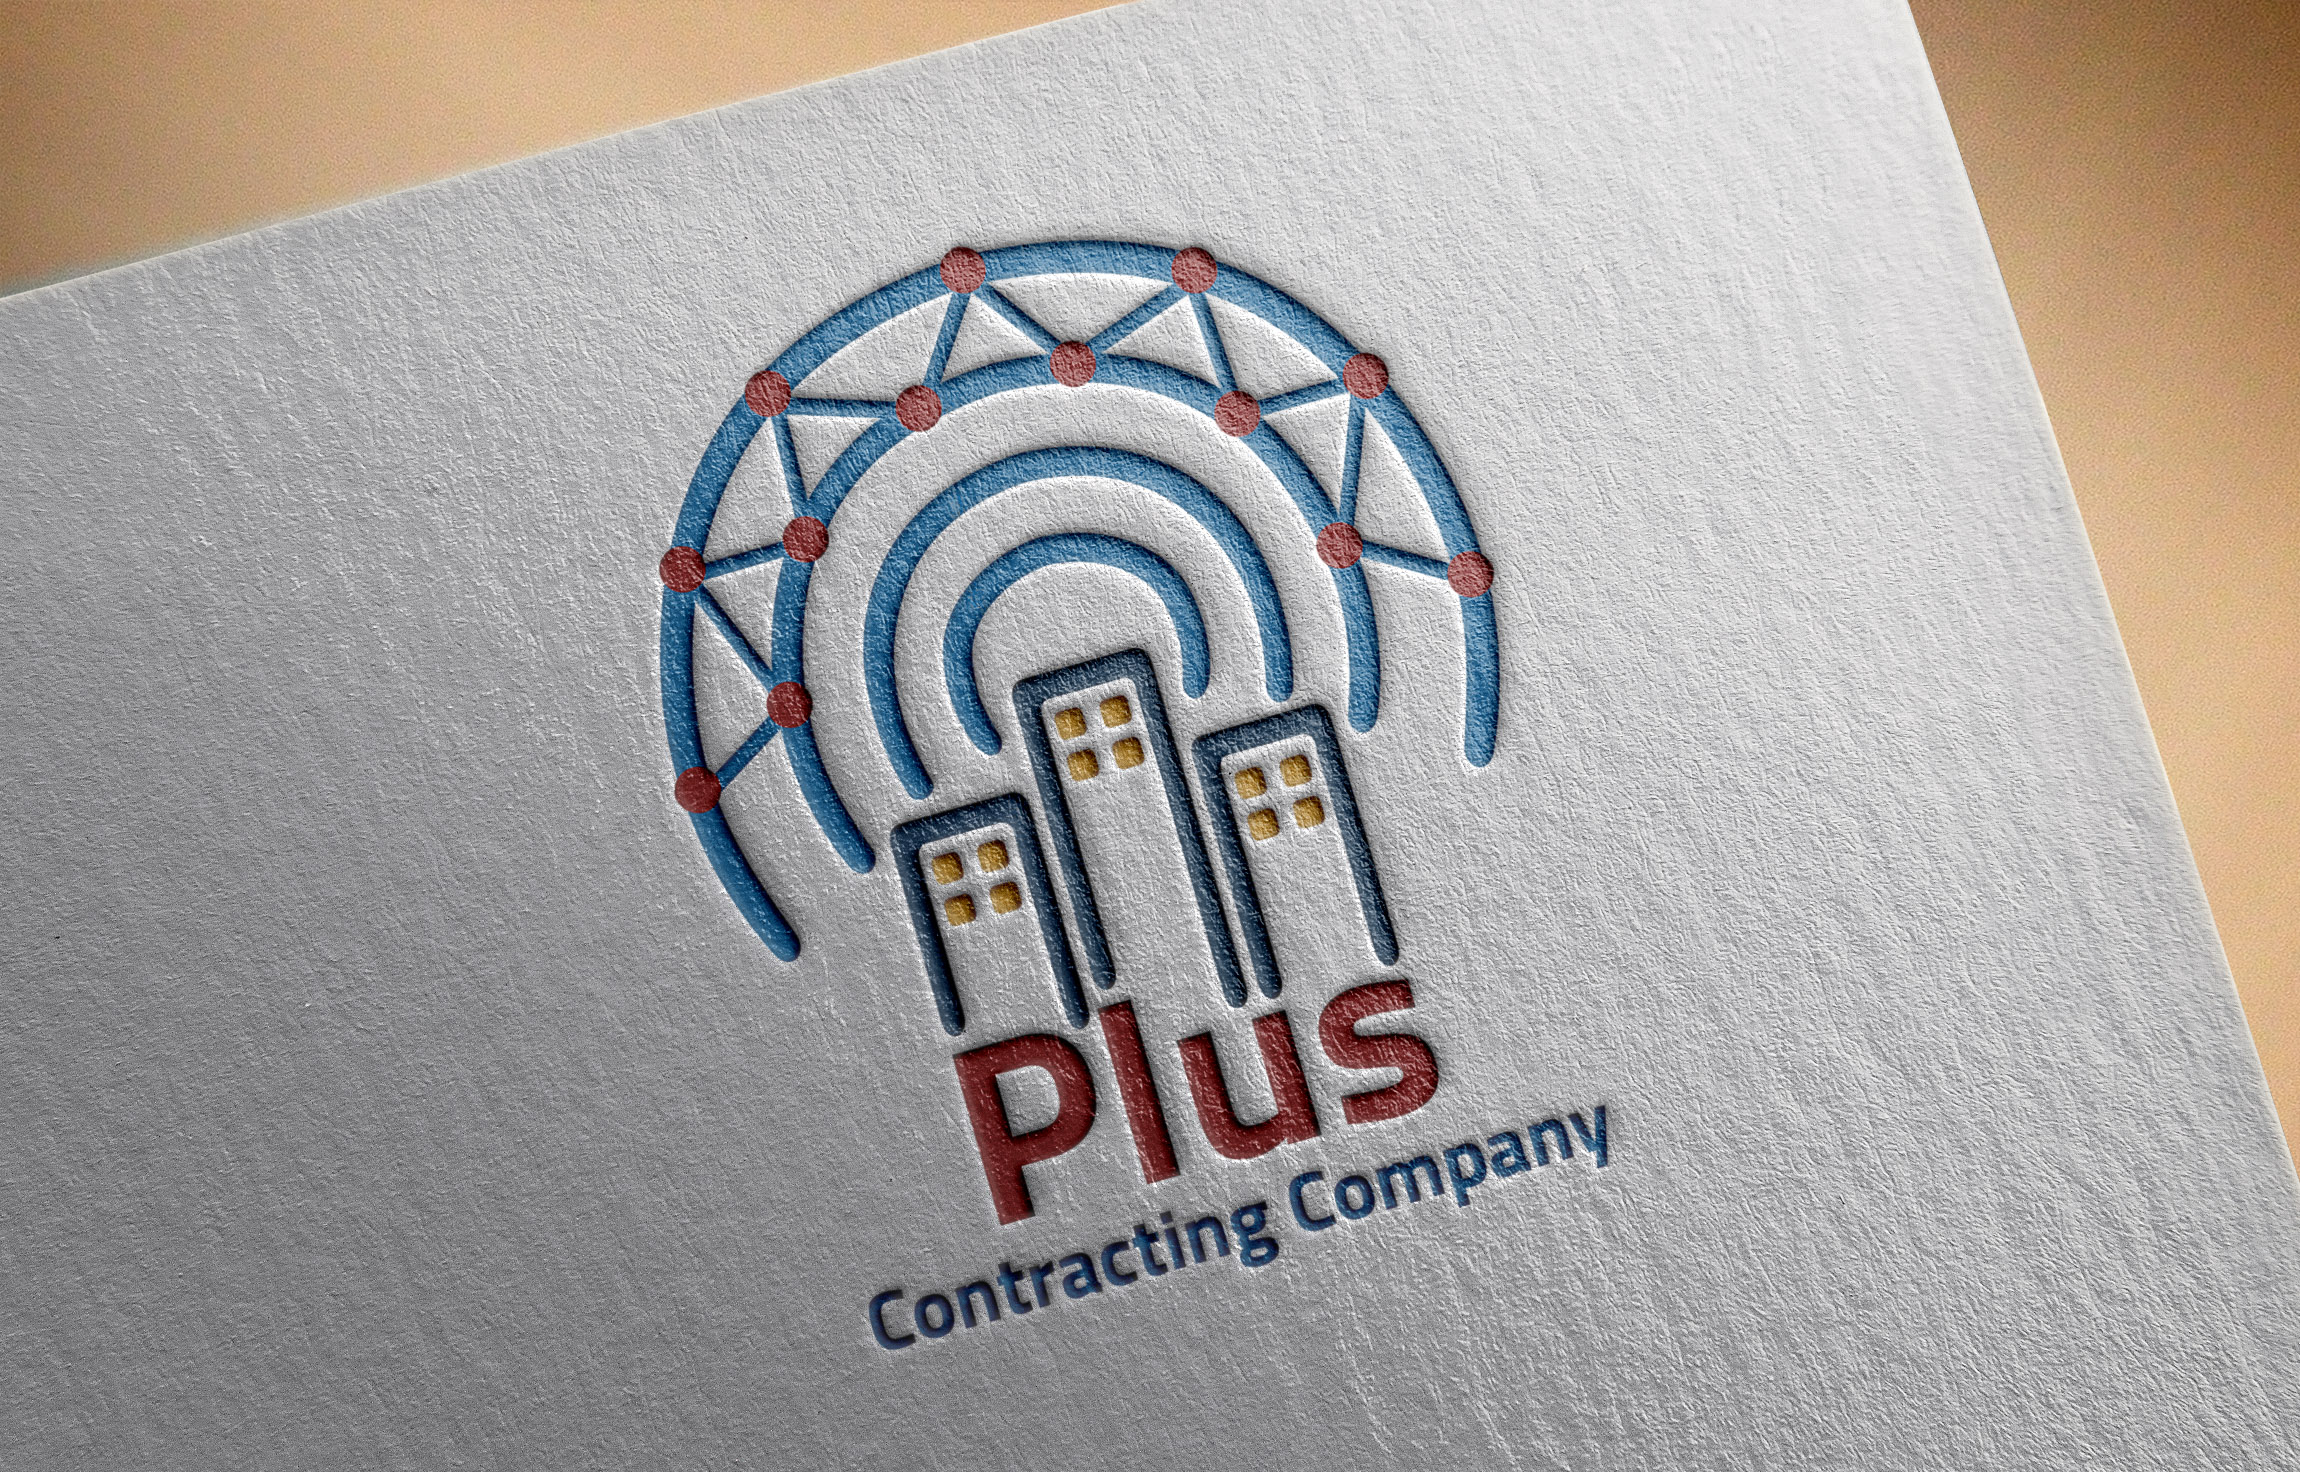 موك أب تصميم شعار لوجو شركة بلس للإتصالات والمقاولات العامة محفور على ورقة 3